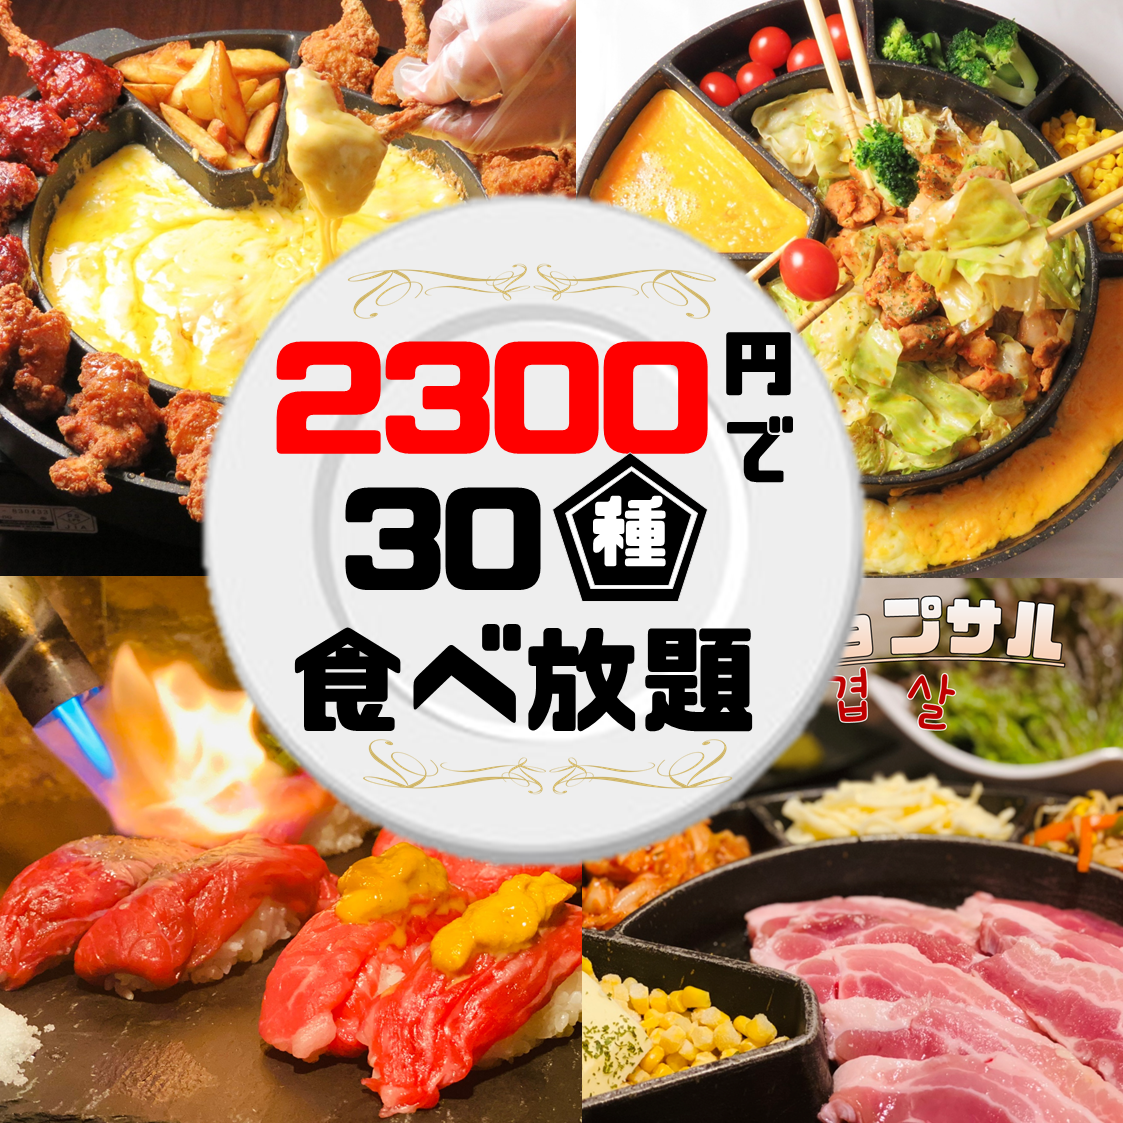 2H 无限畅饮 + choa 鸡 + 零食 1 件 3500 日元 ⇒ 2300 日元